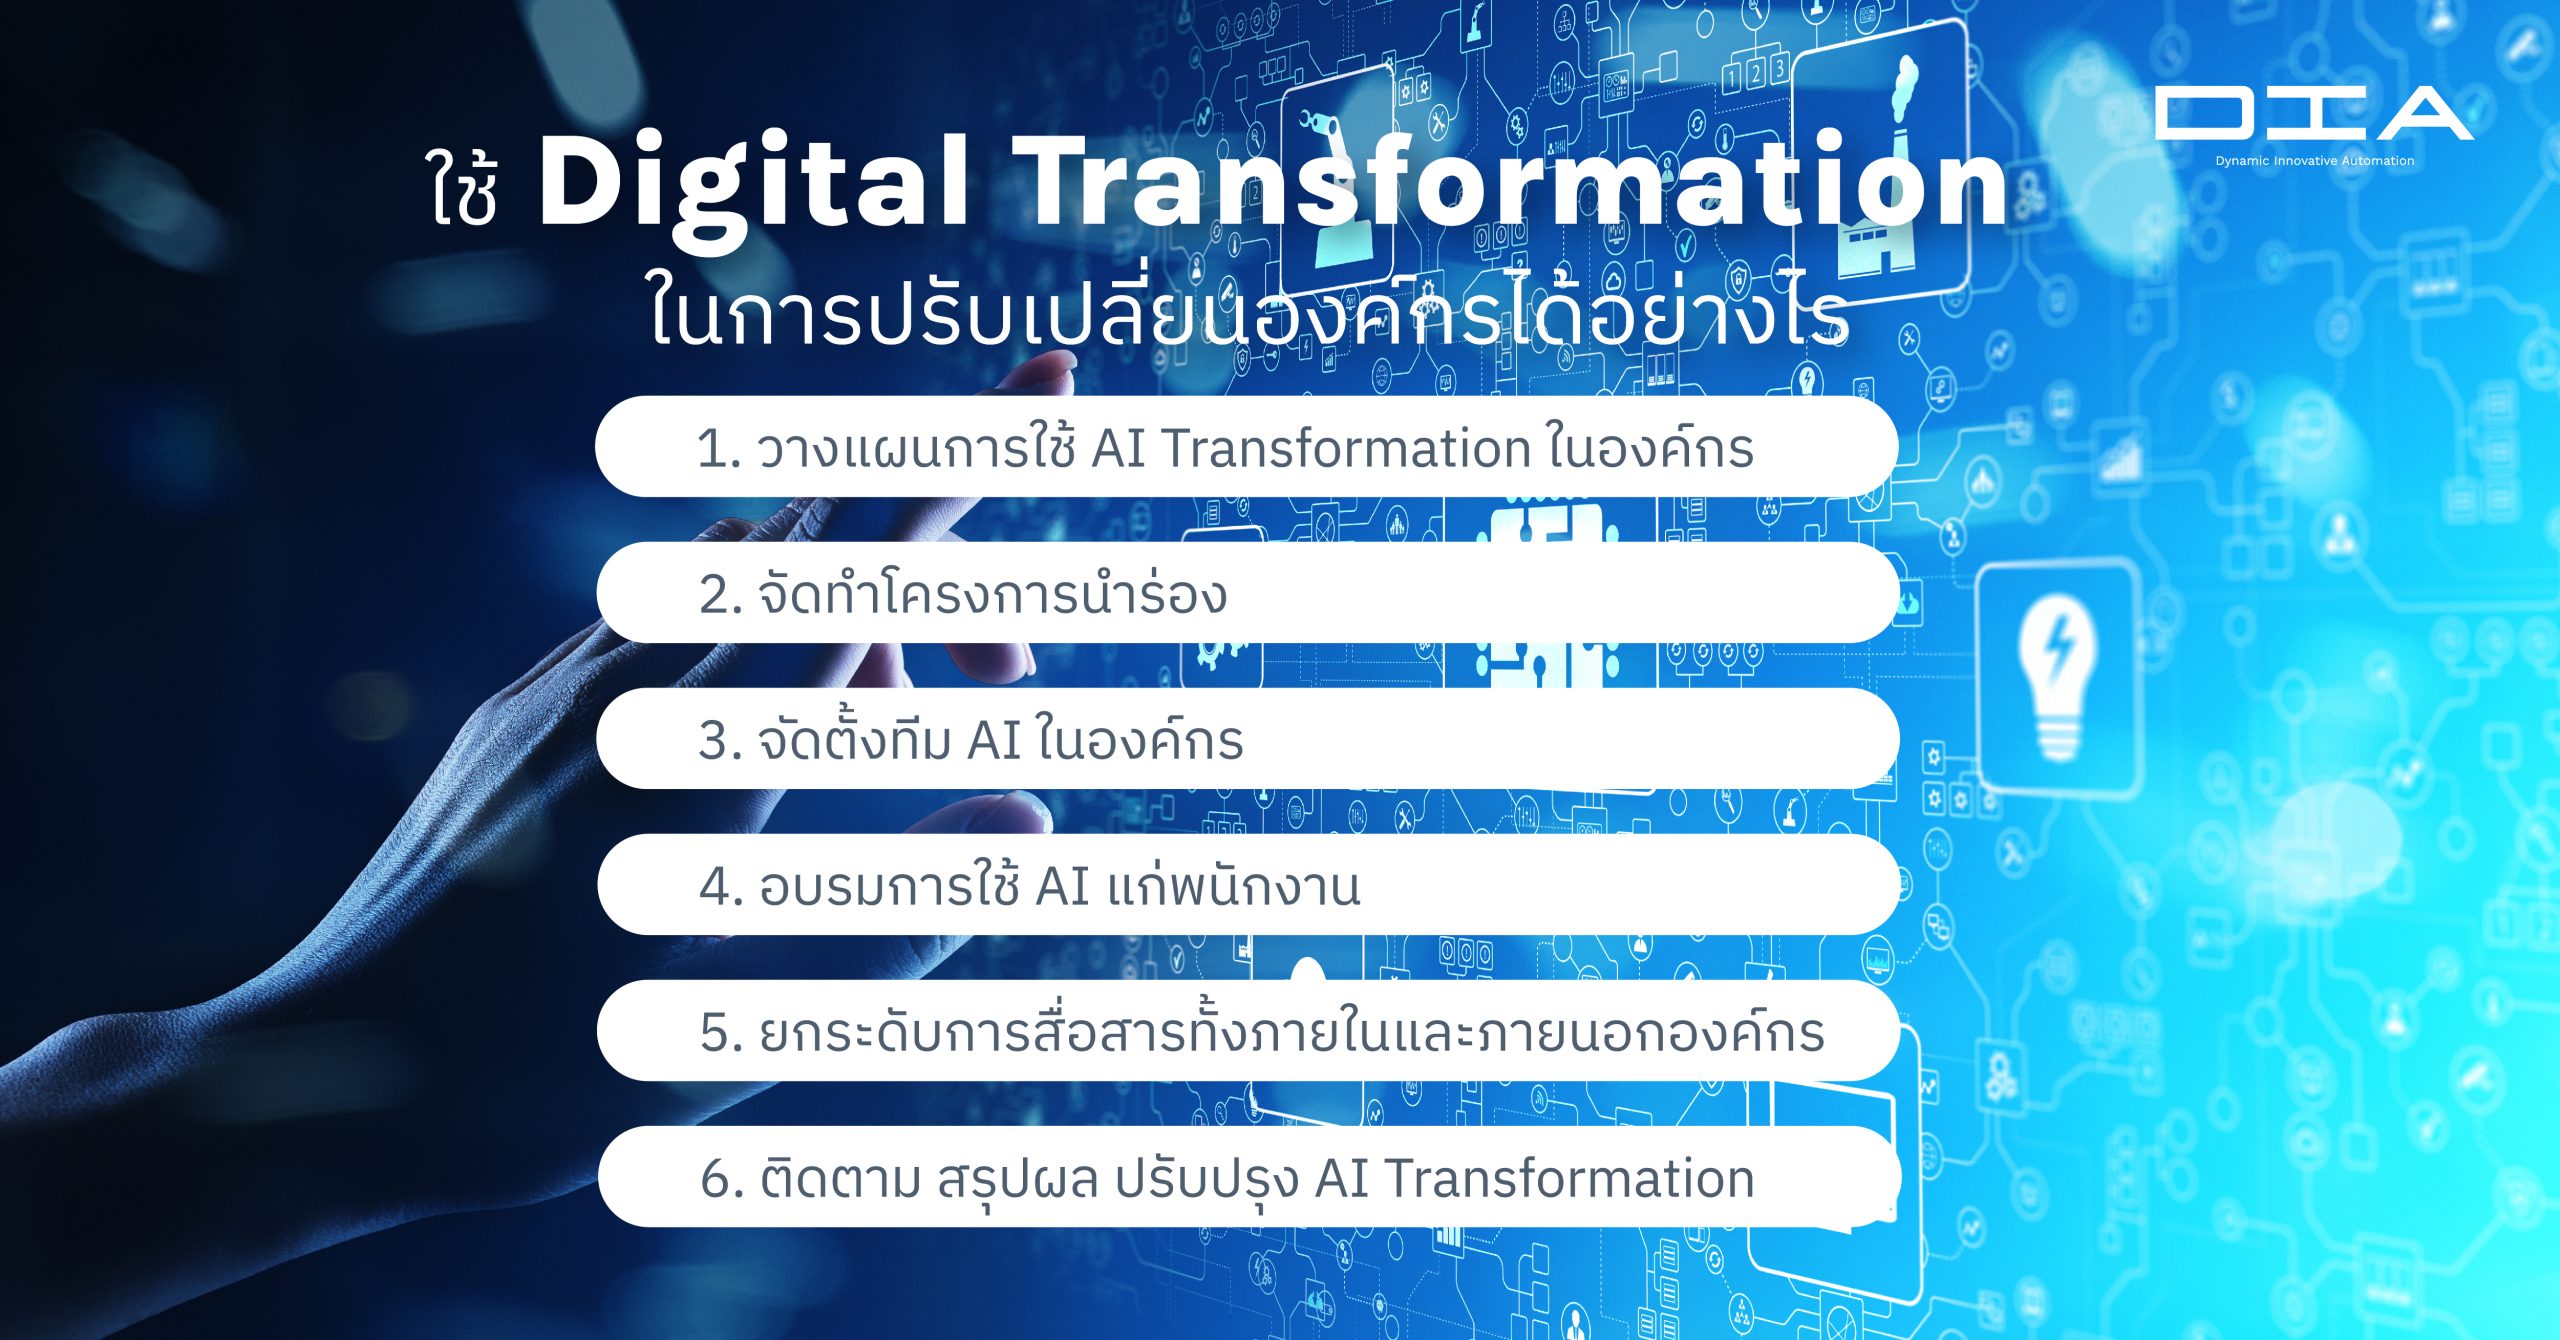 ใช้ Digital Transformation ในการปรับเปลี่ยนองค์กรได้อย่างไร